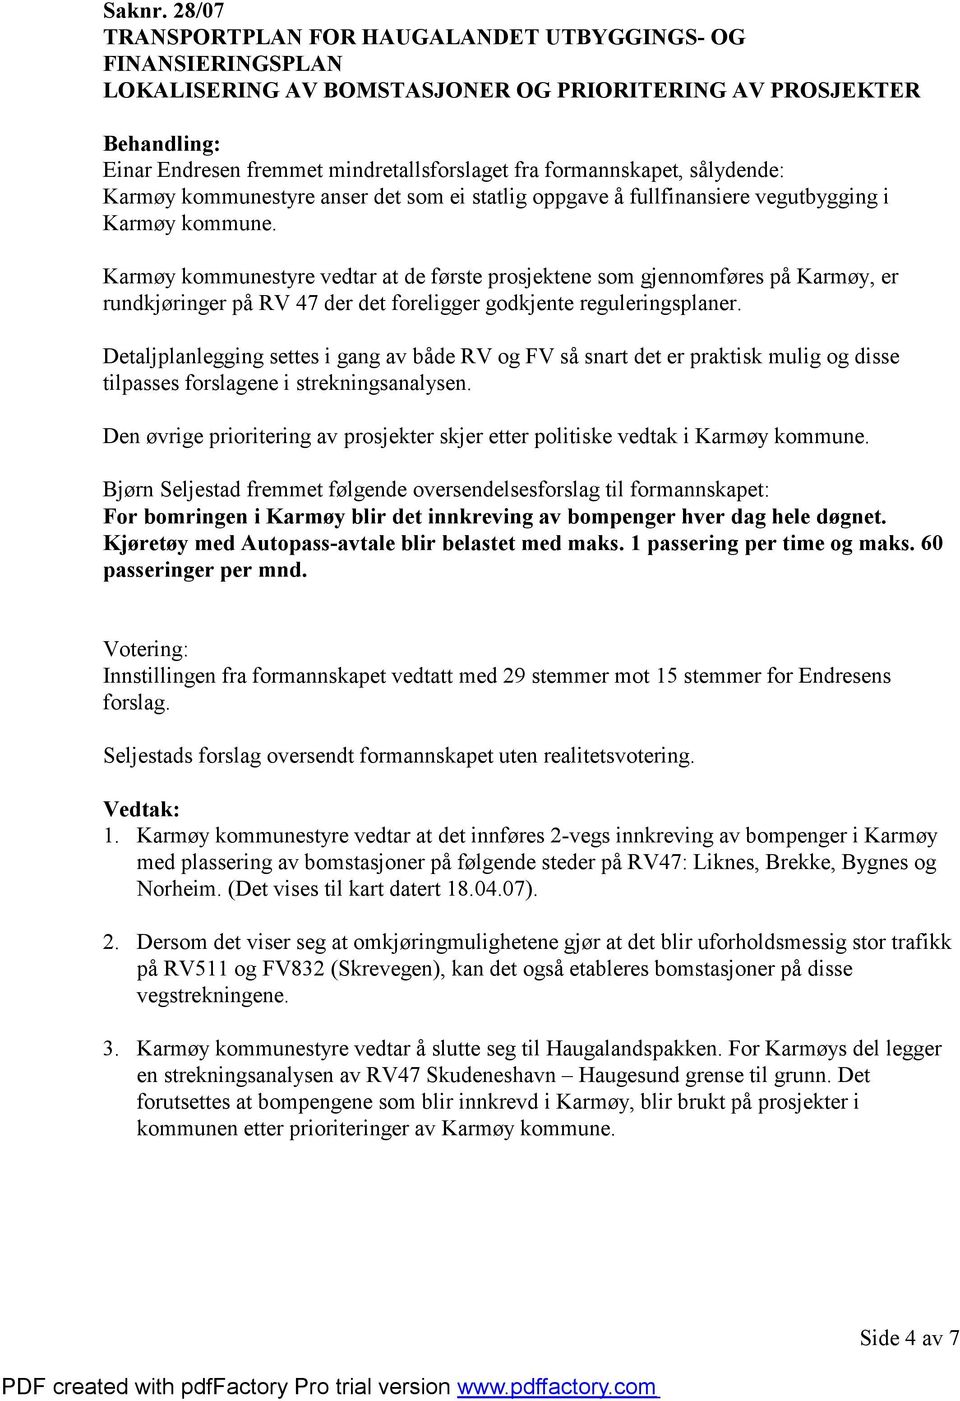 sålydende: Karmøy kommunestyre anser det som ei statlig oppgave å fullfinansiere vegutbygging i Karmøy kommune.